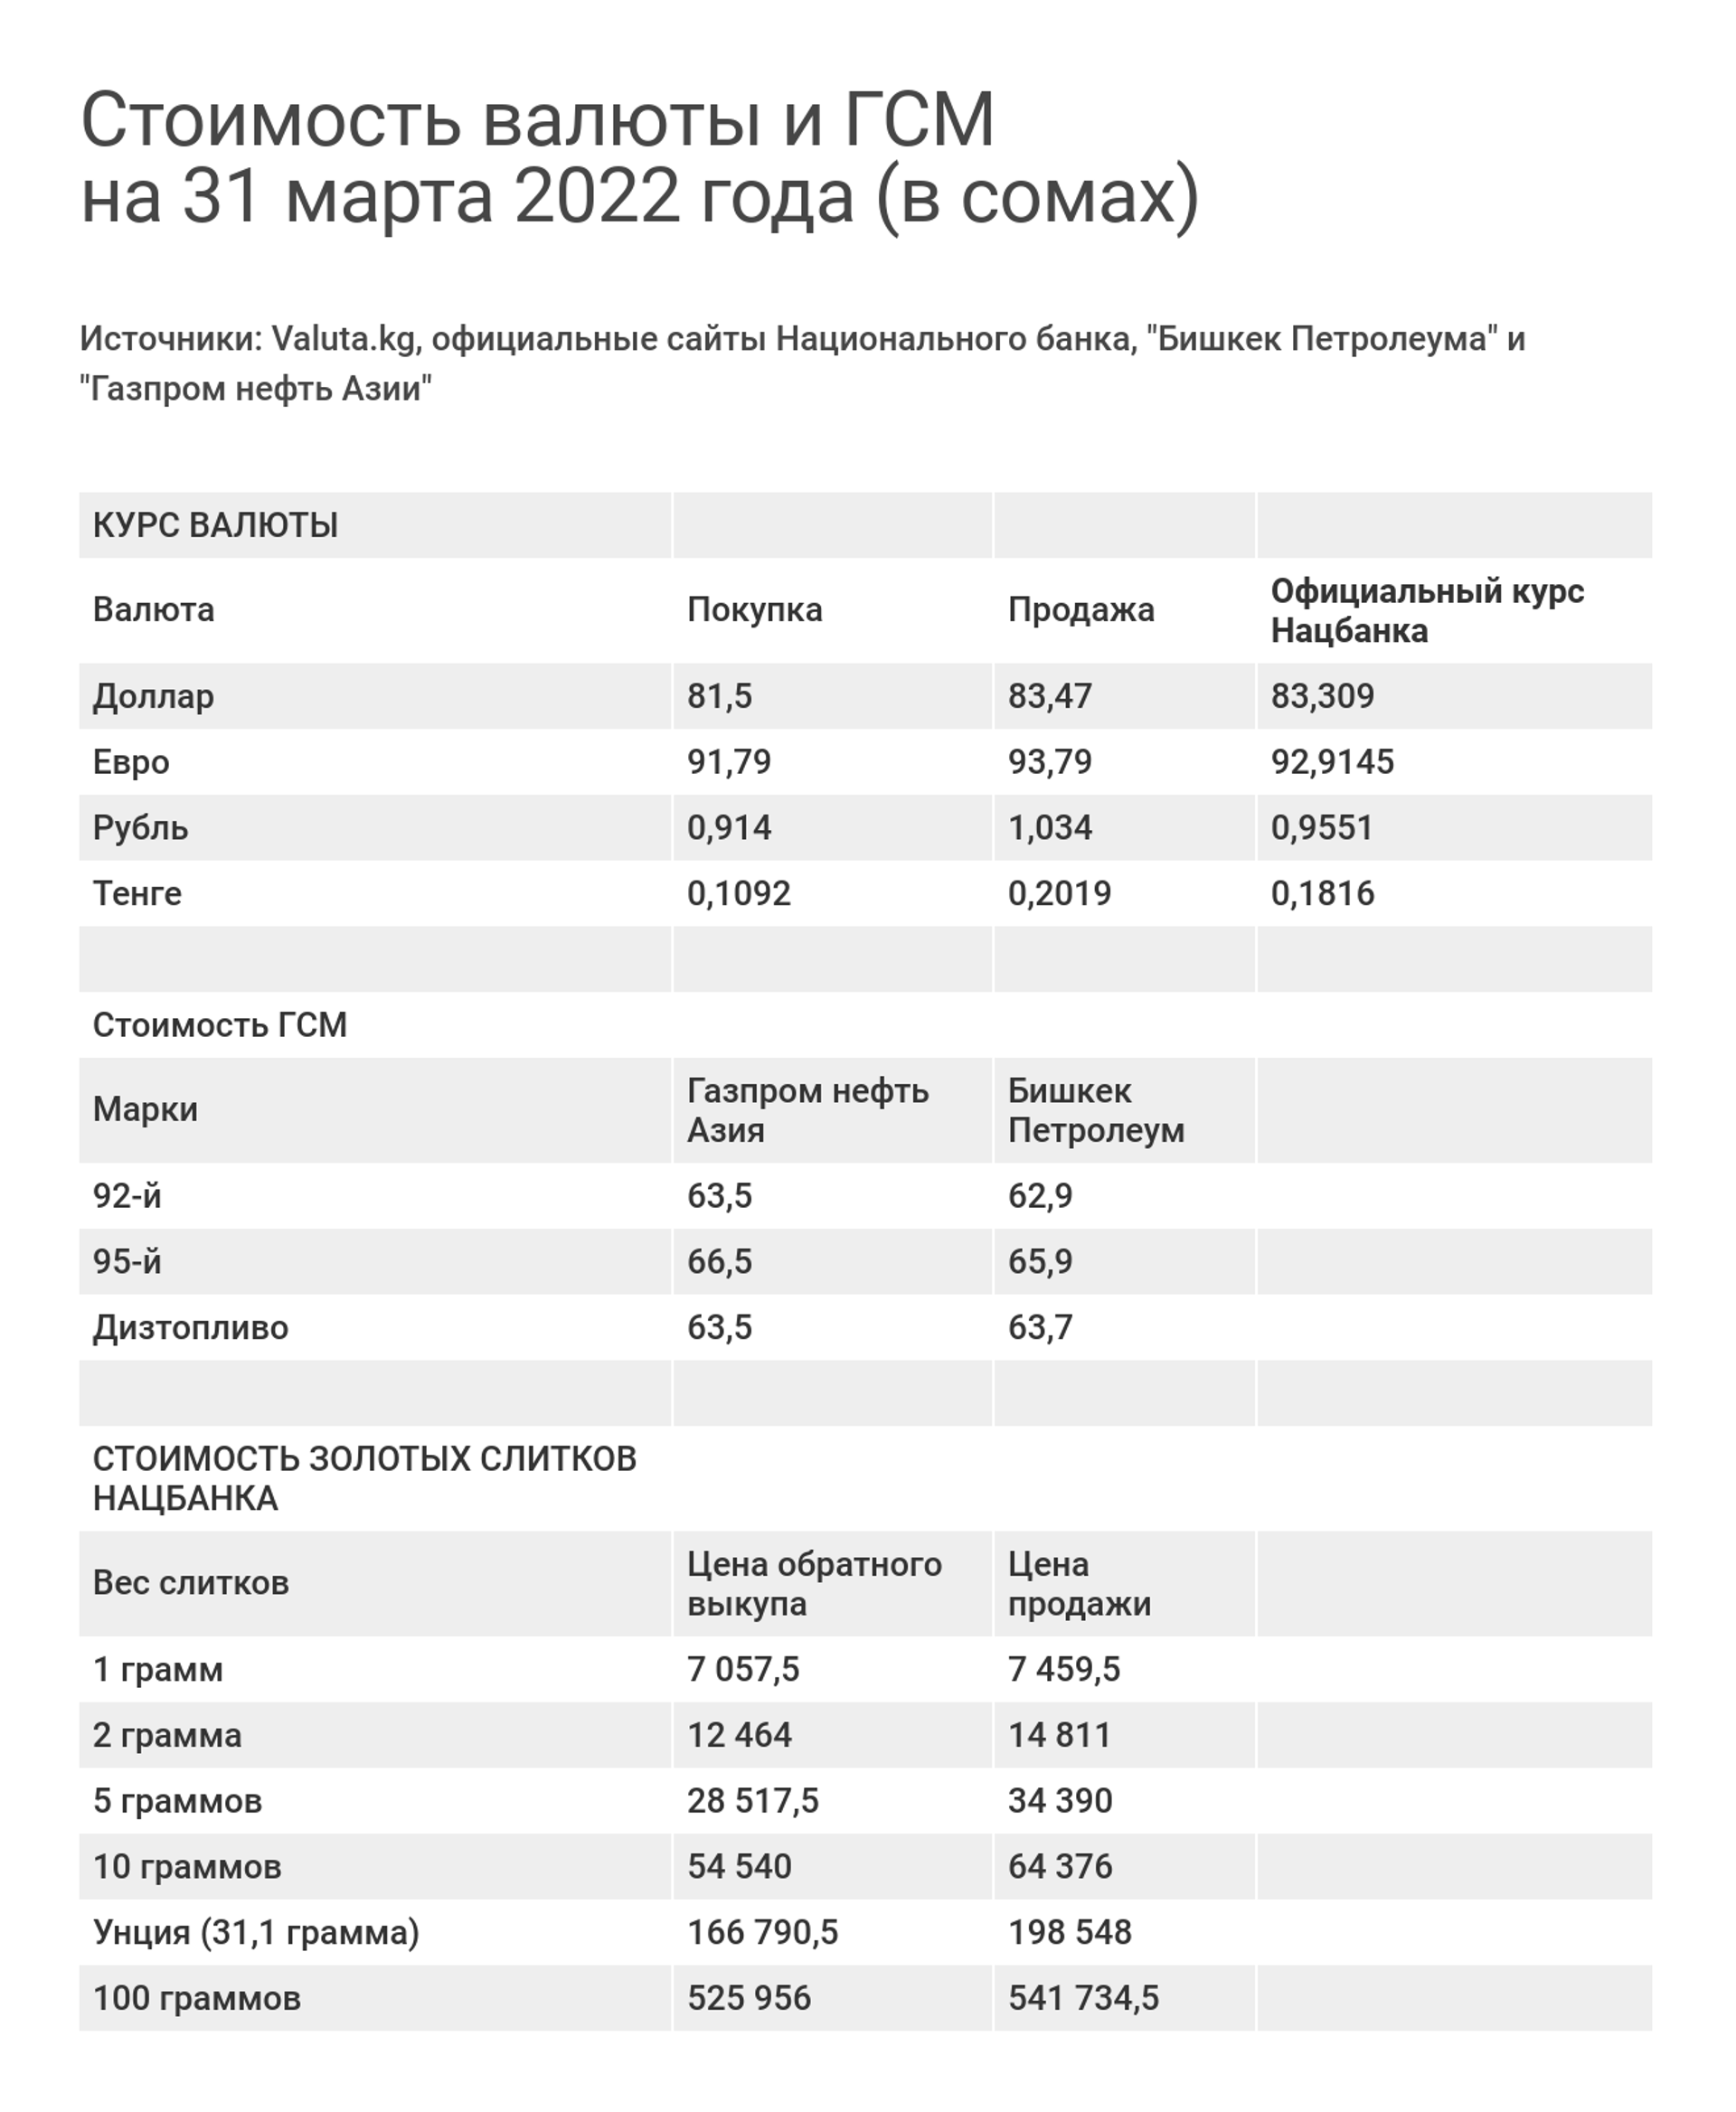 Стоимость валюты и ГСМ на 31 марта 2022 года (в сомах) - Sputnik Кыргызстан, 1920, 31.03.2022